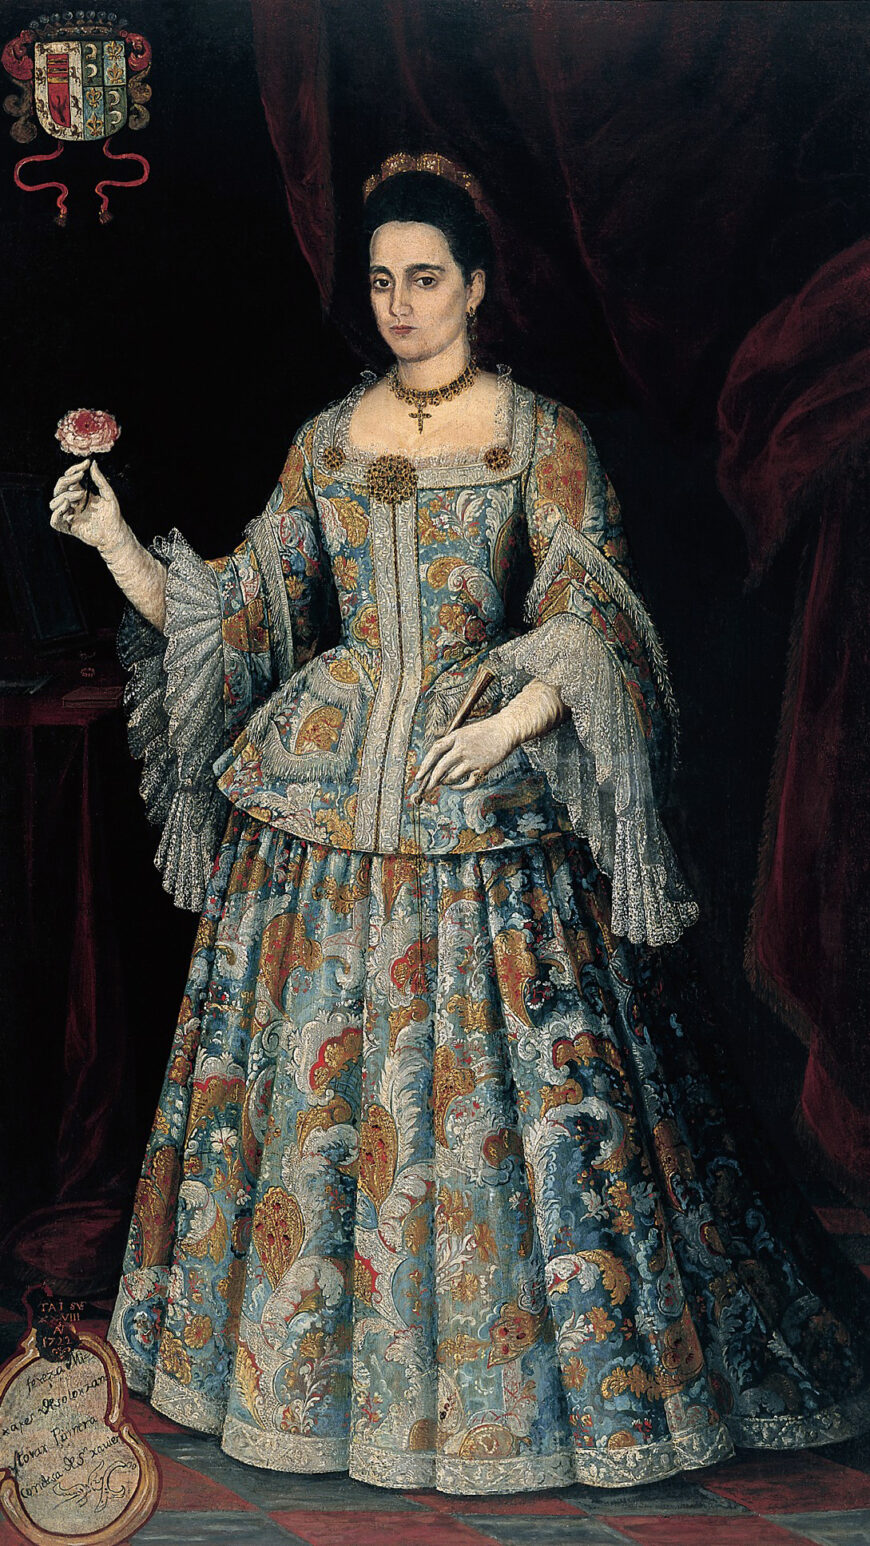 Unidentified artist, Portrait of Doña Teresa Mijares de Solórzano y Tovar, after 1732, oil on canvas, 194 x 111.5 cm (Galeria de Arte Nacional, Caracas)